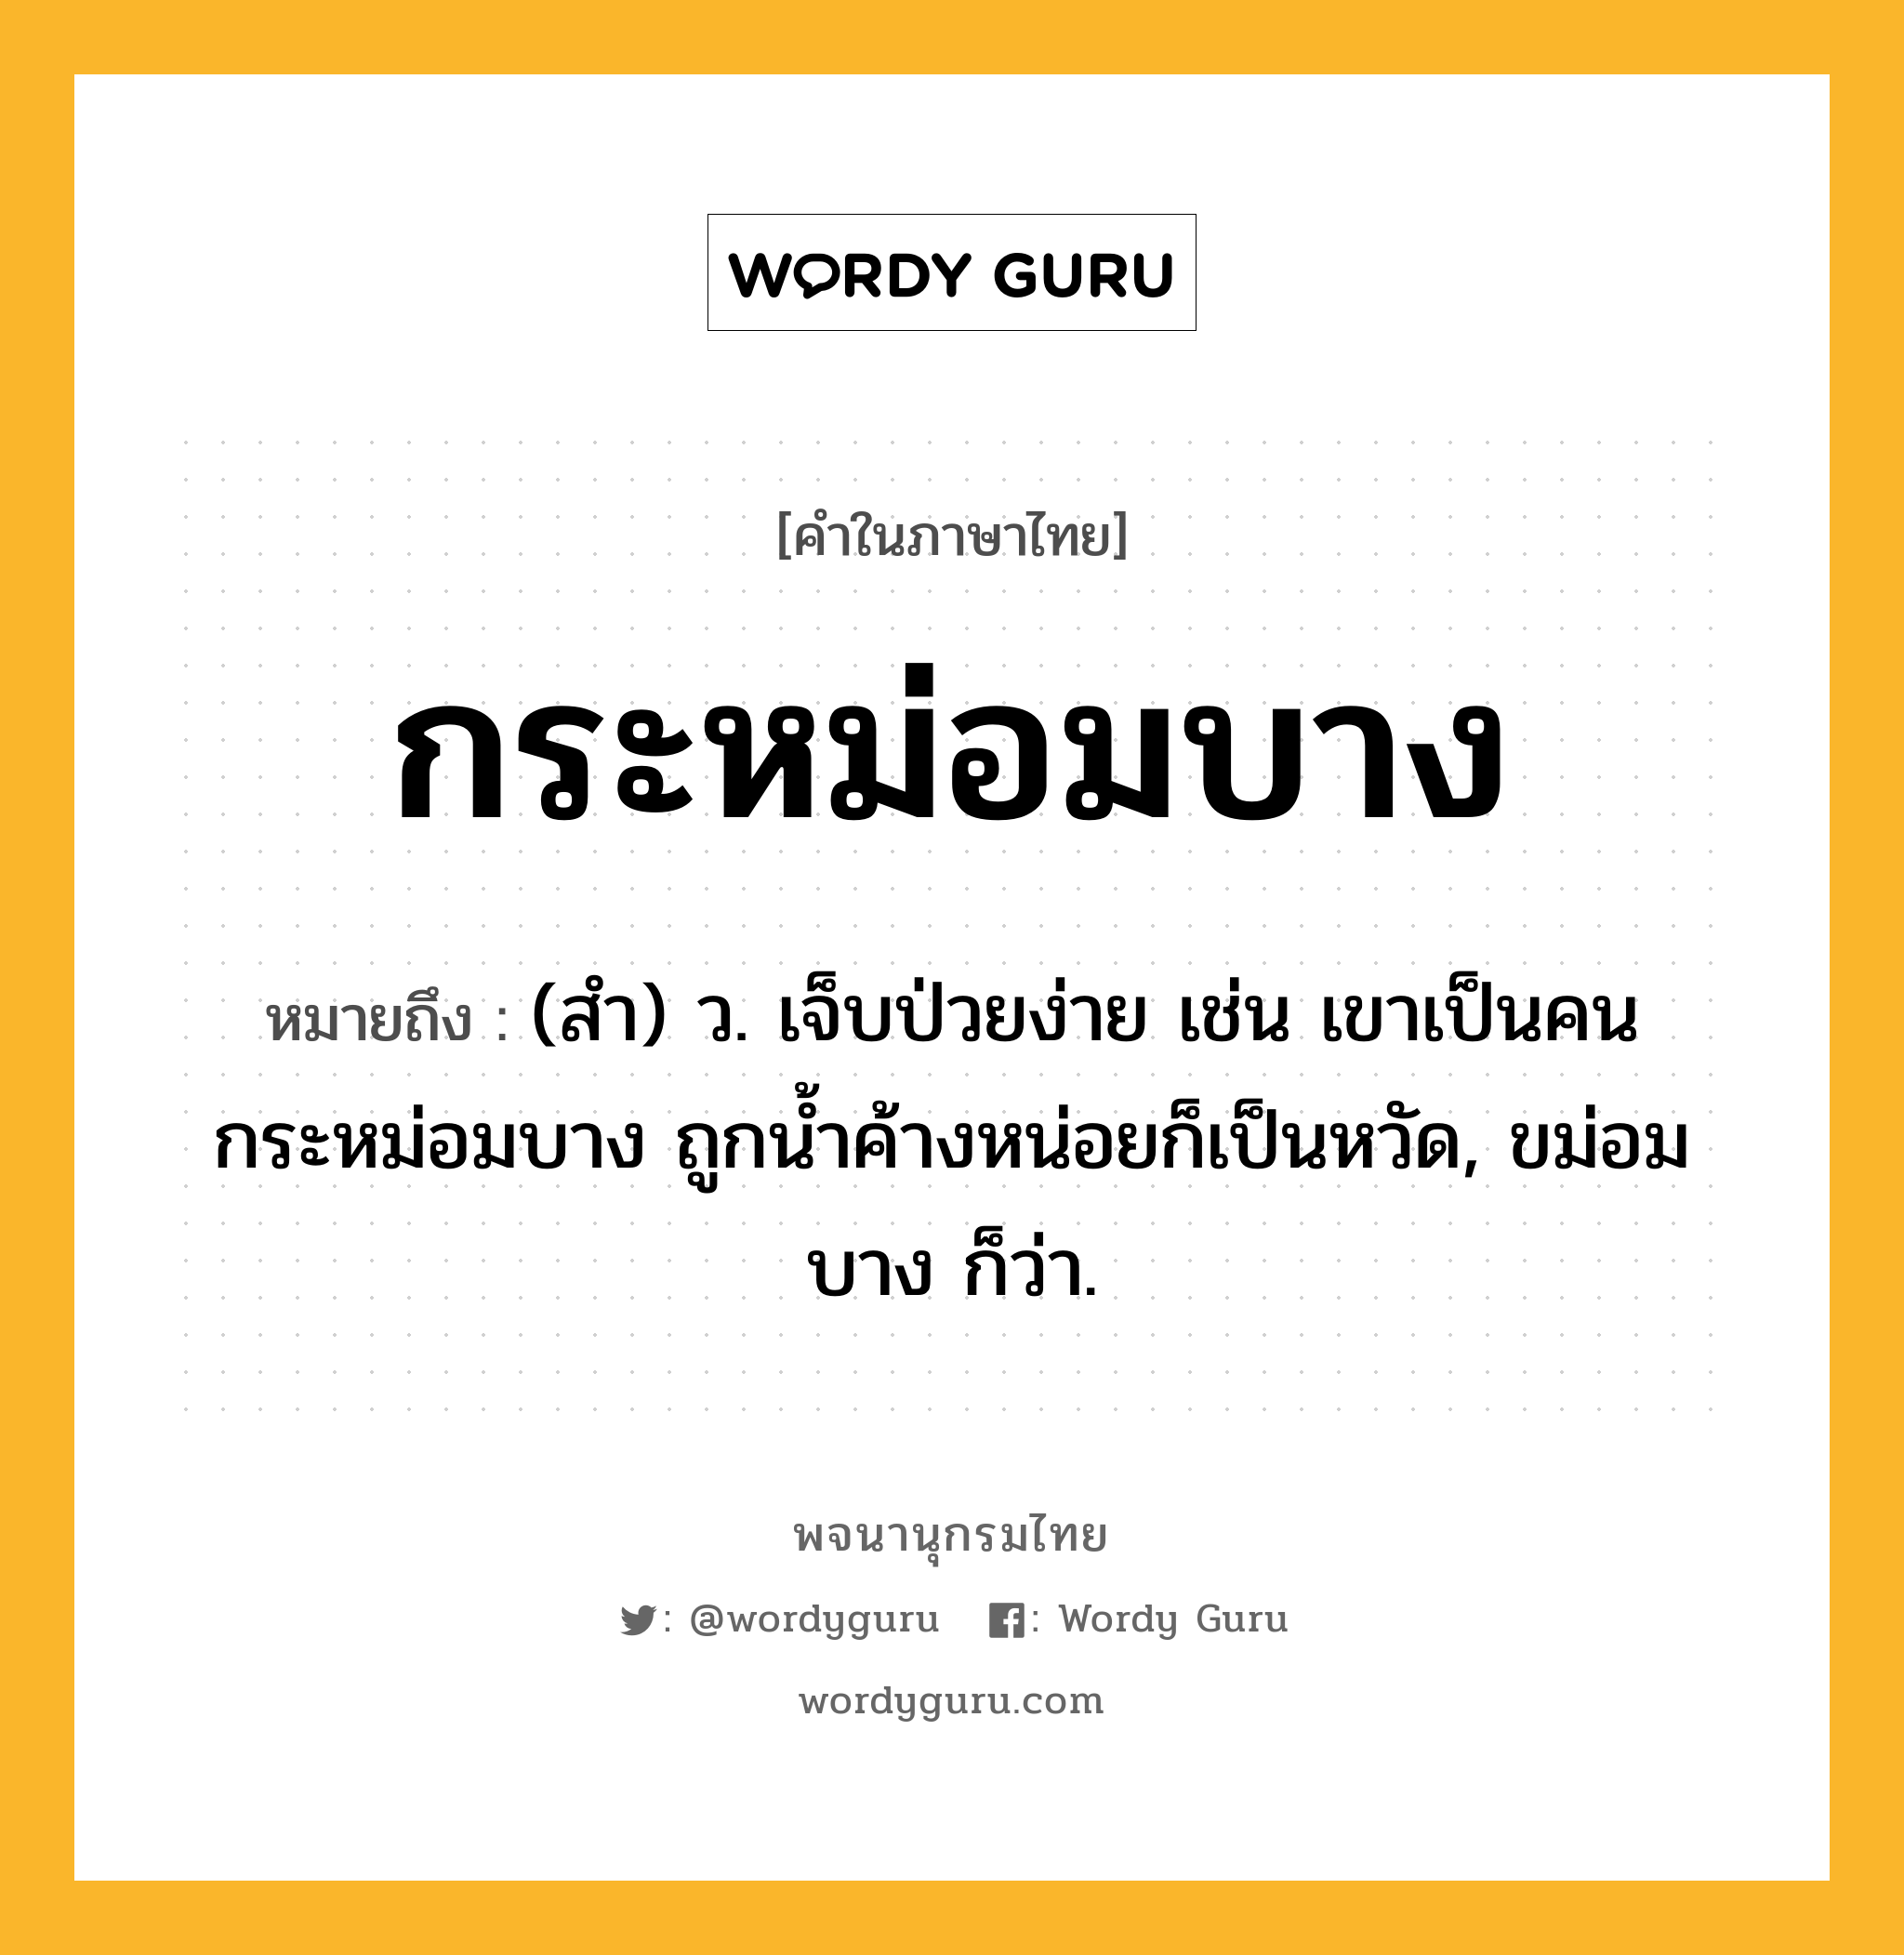 กระหม่อมบาง หมายถึงอะไร?, คำในภาษาไทย กระหม่อมบาง หมายถึง (สํา) ว. เจ็บป่วยง่าย เช่น เขาเป็นคนกระหม่อมบาง ถูกนํ้าค้างหน่อยก็เป็นหวัด, ขม่อมบาง ก็ว่า.